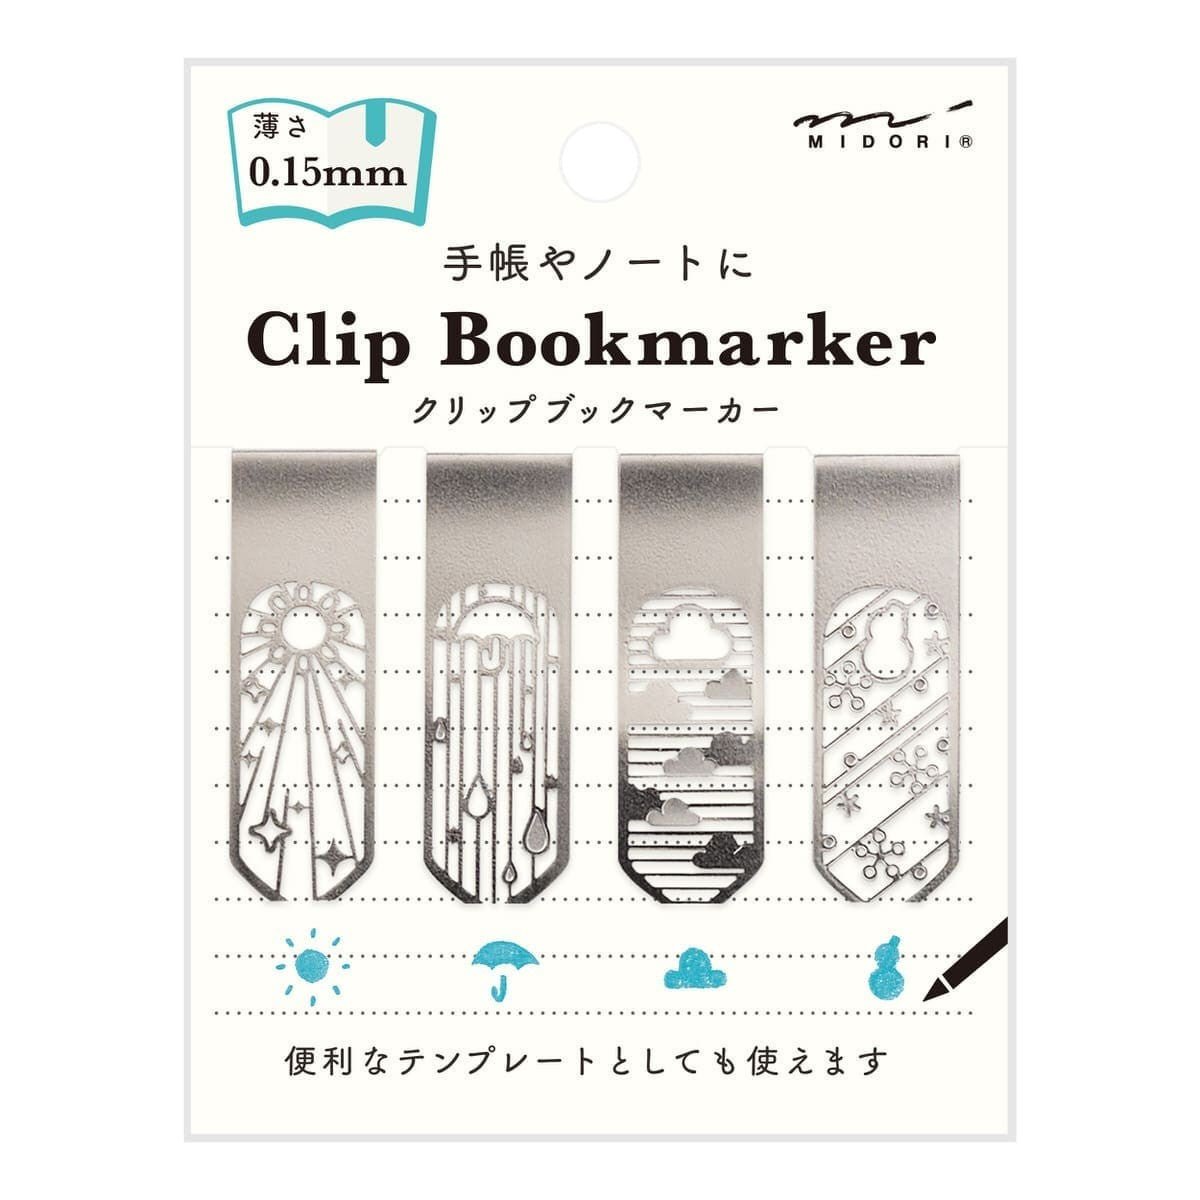 Midori Clip Bookmarker - Weather - Midori - Tidformera